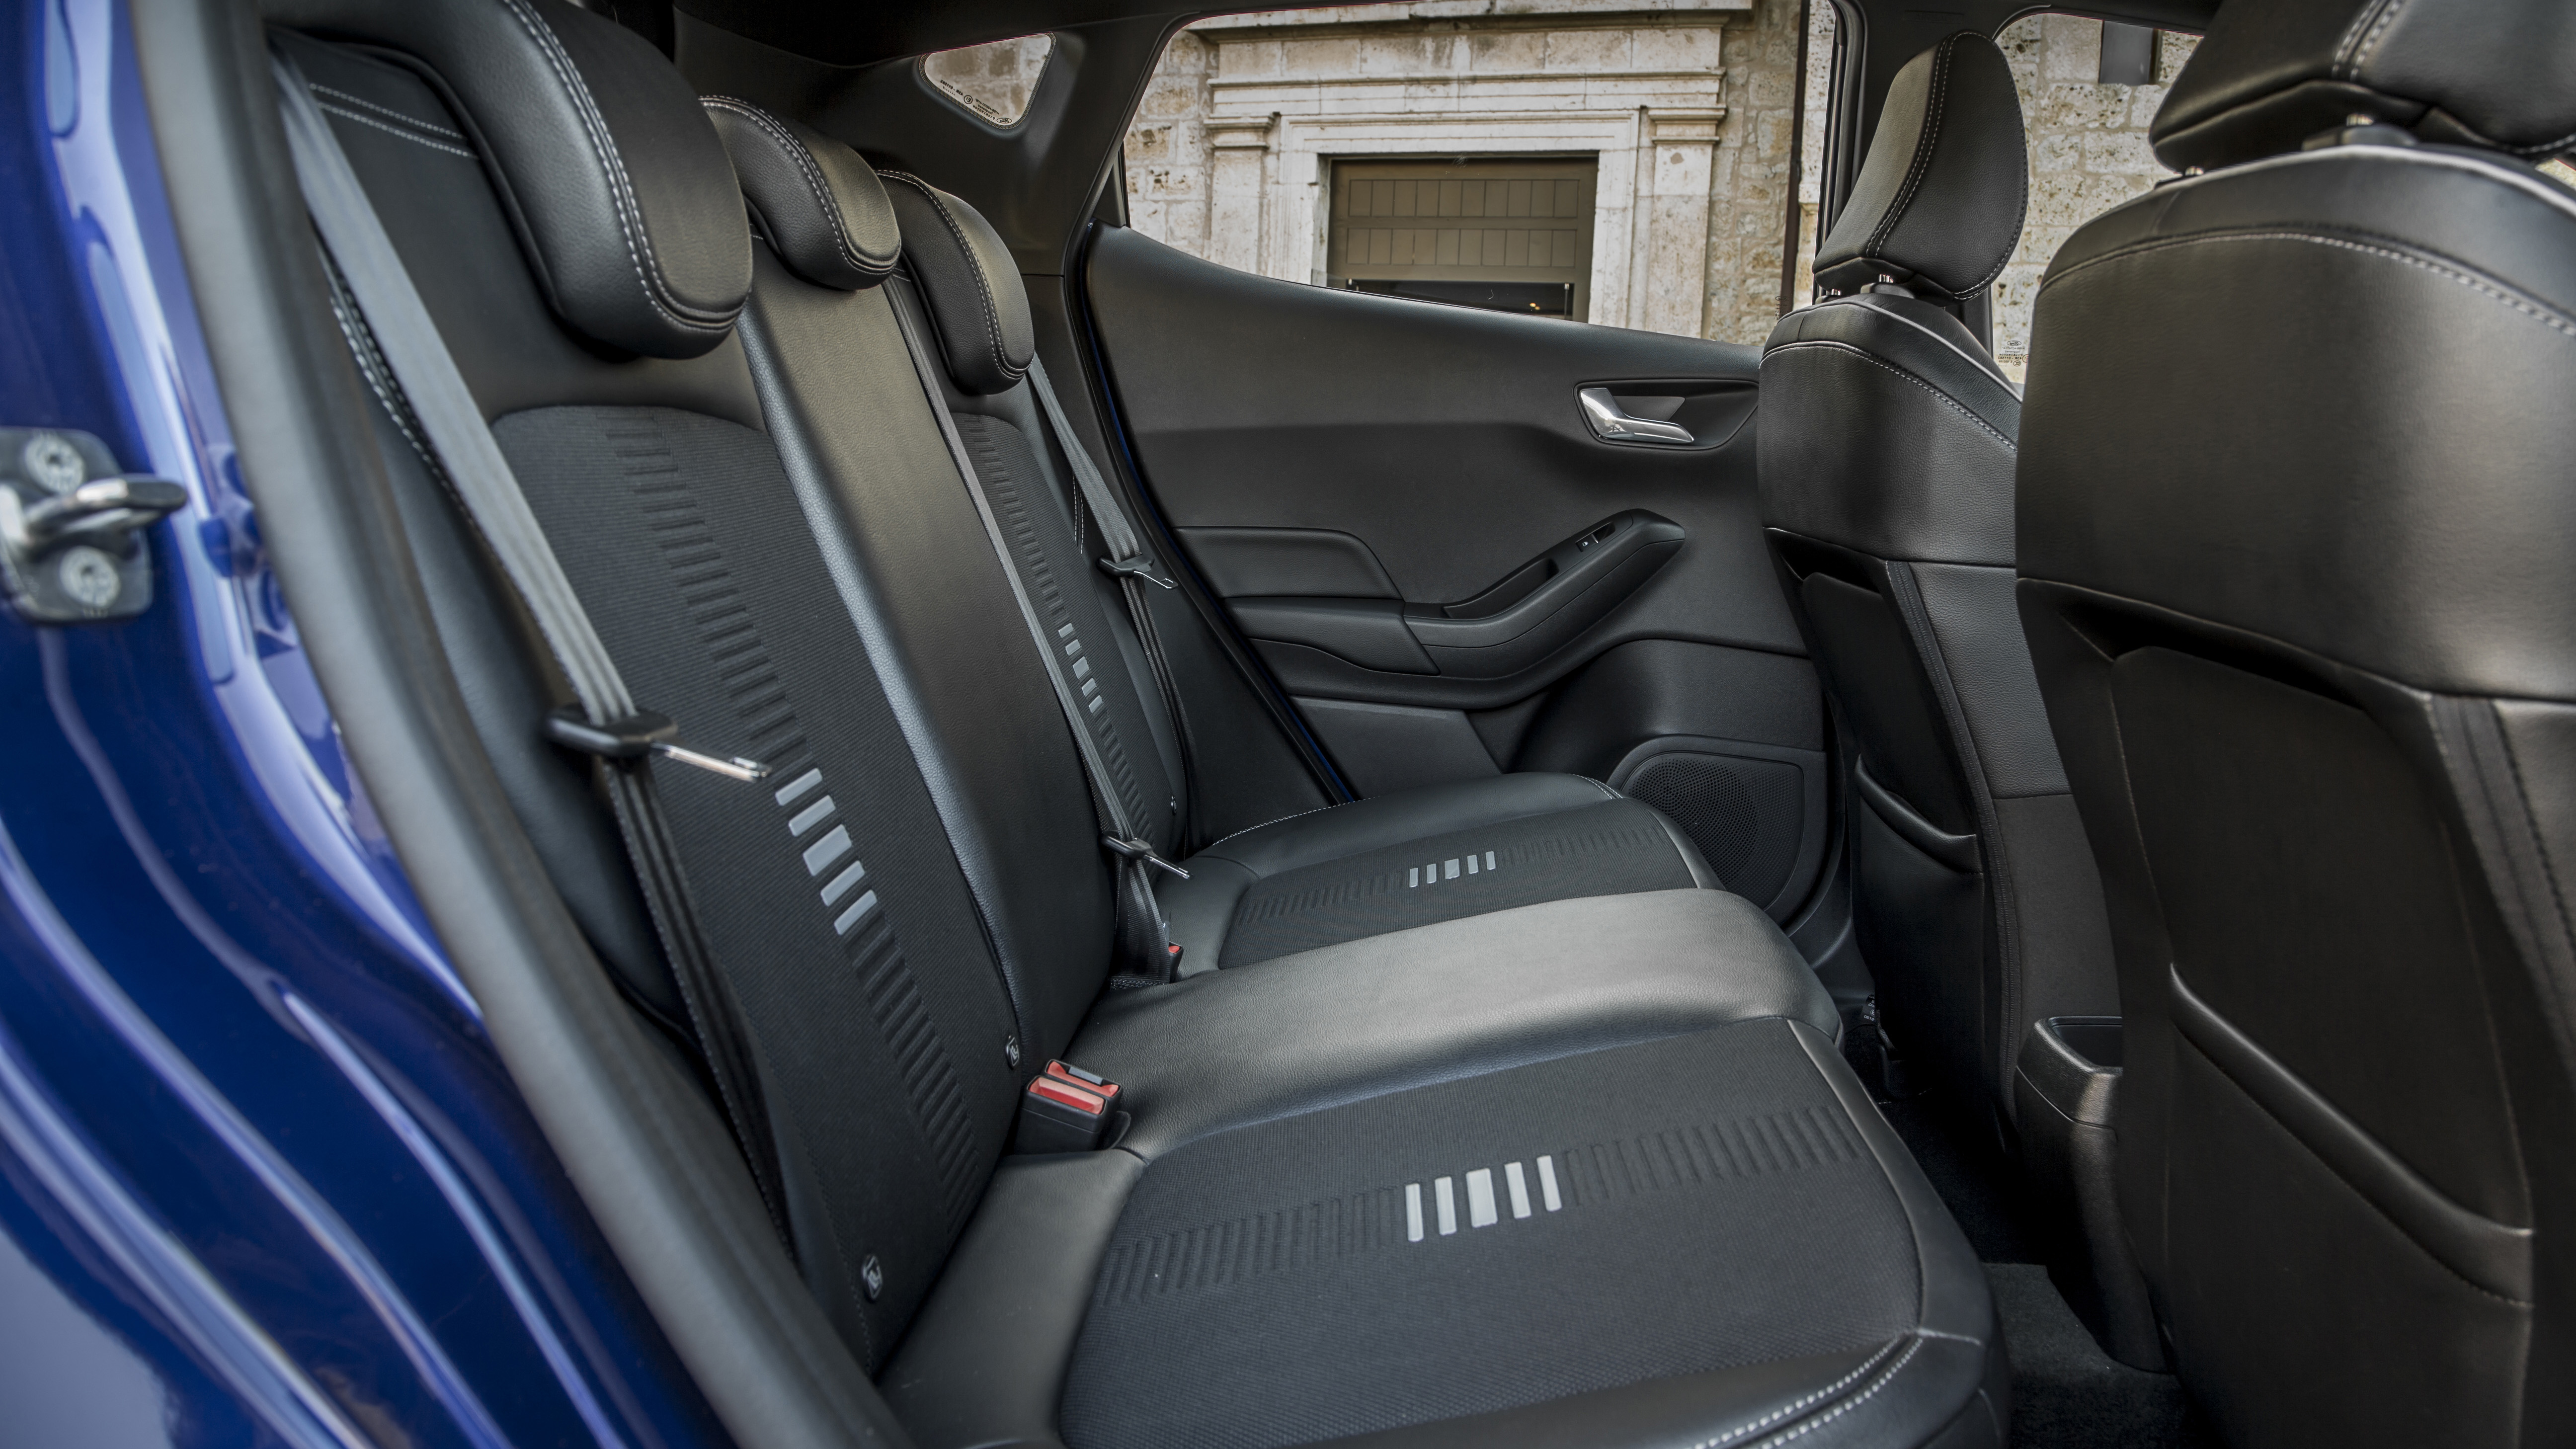 Ford Fiesta 3-door interior 2017